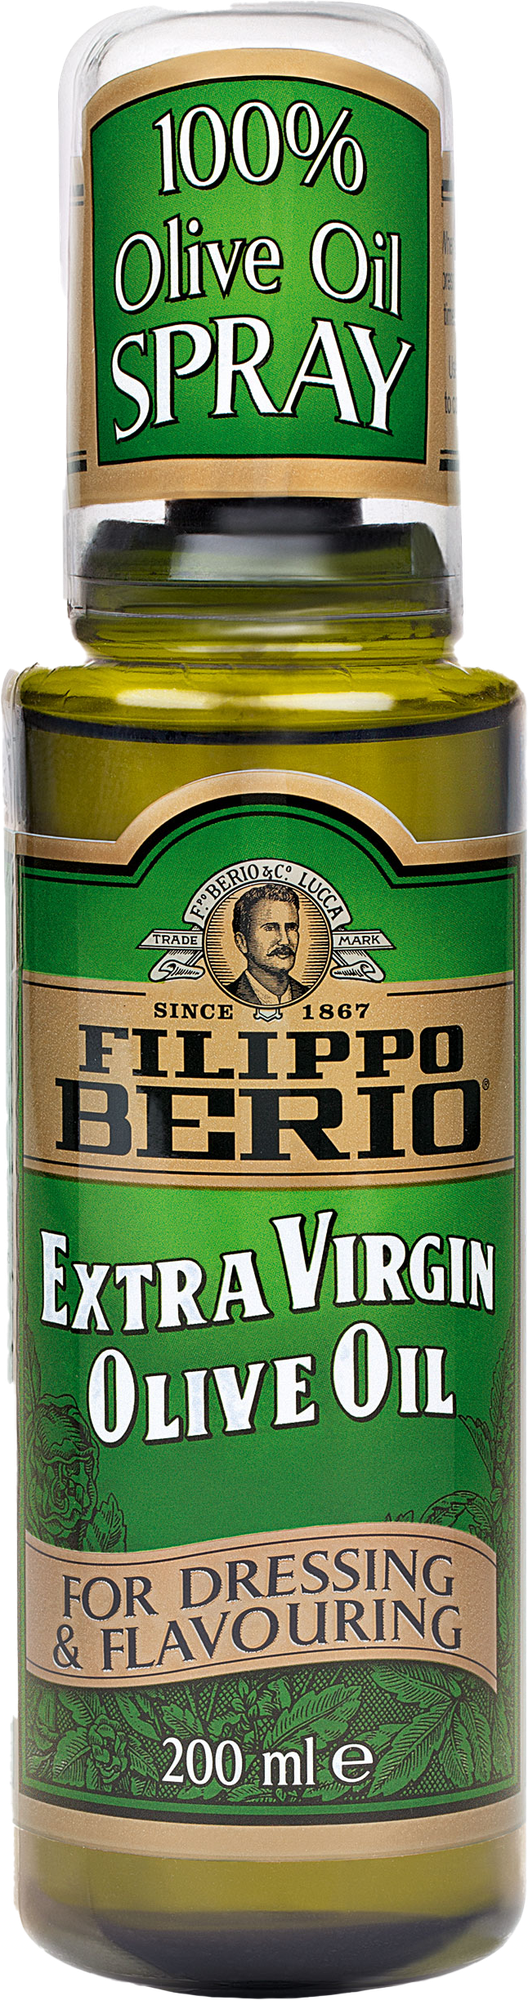 Оливковое масло FILIPPO BERIO, спрей, нерафинированное высшего качества (Extra Virgin), пл/б, 200 мл